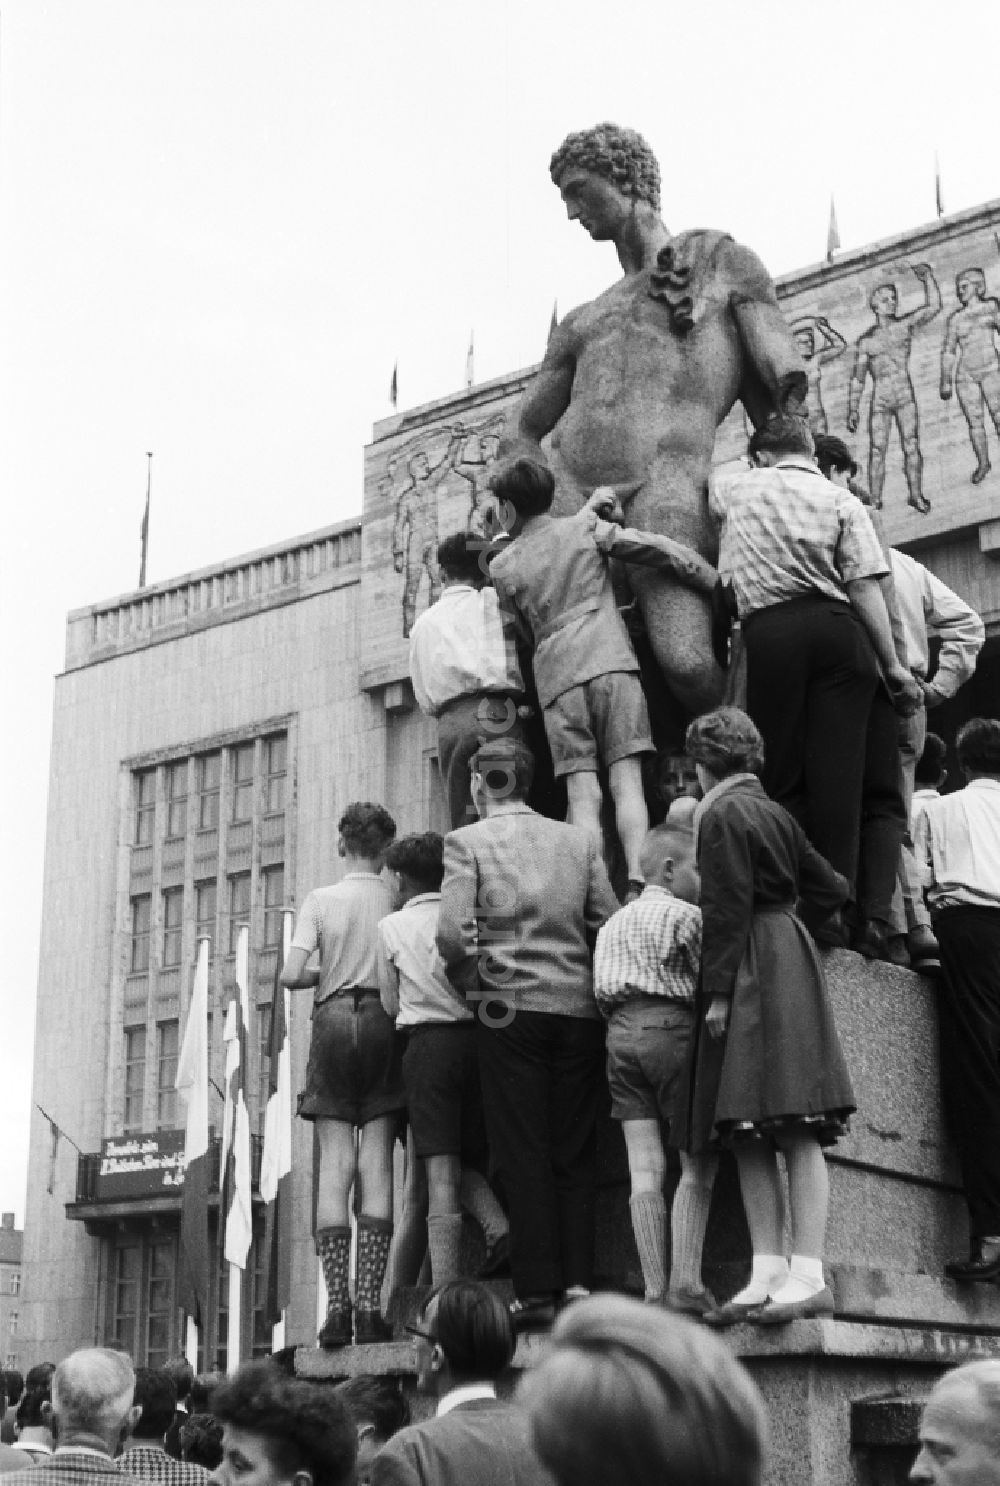 Berlin: Skulptur und Kopie einer spätklassizistischen männlichen Figur in Berlin, der ehemaligen Hauptstadt der DDR, Deutsche Demokratische Republik